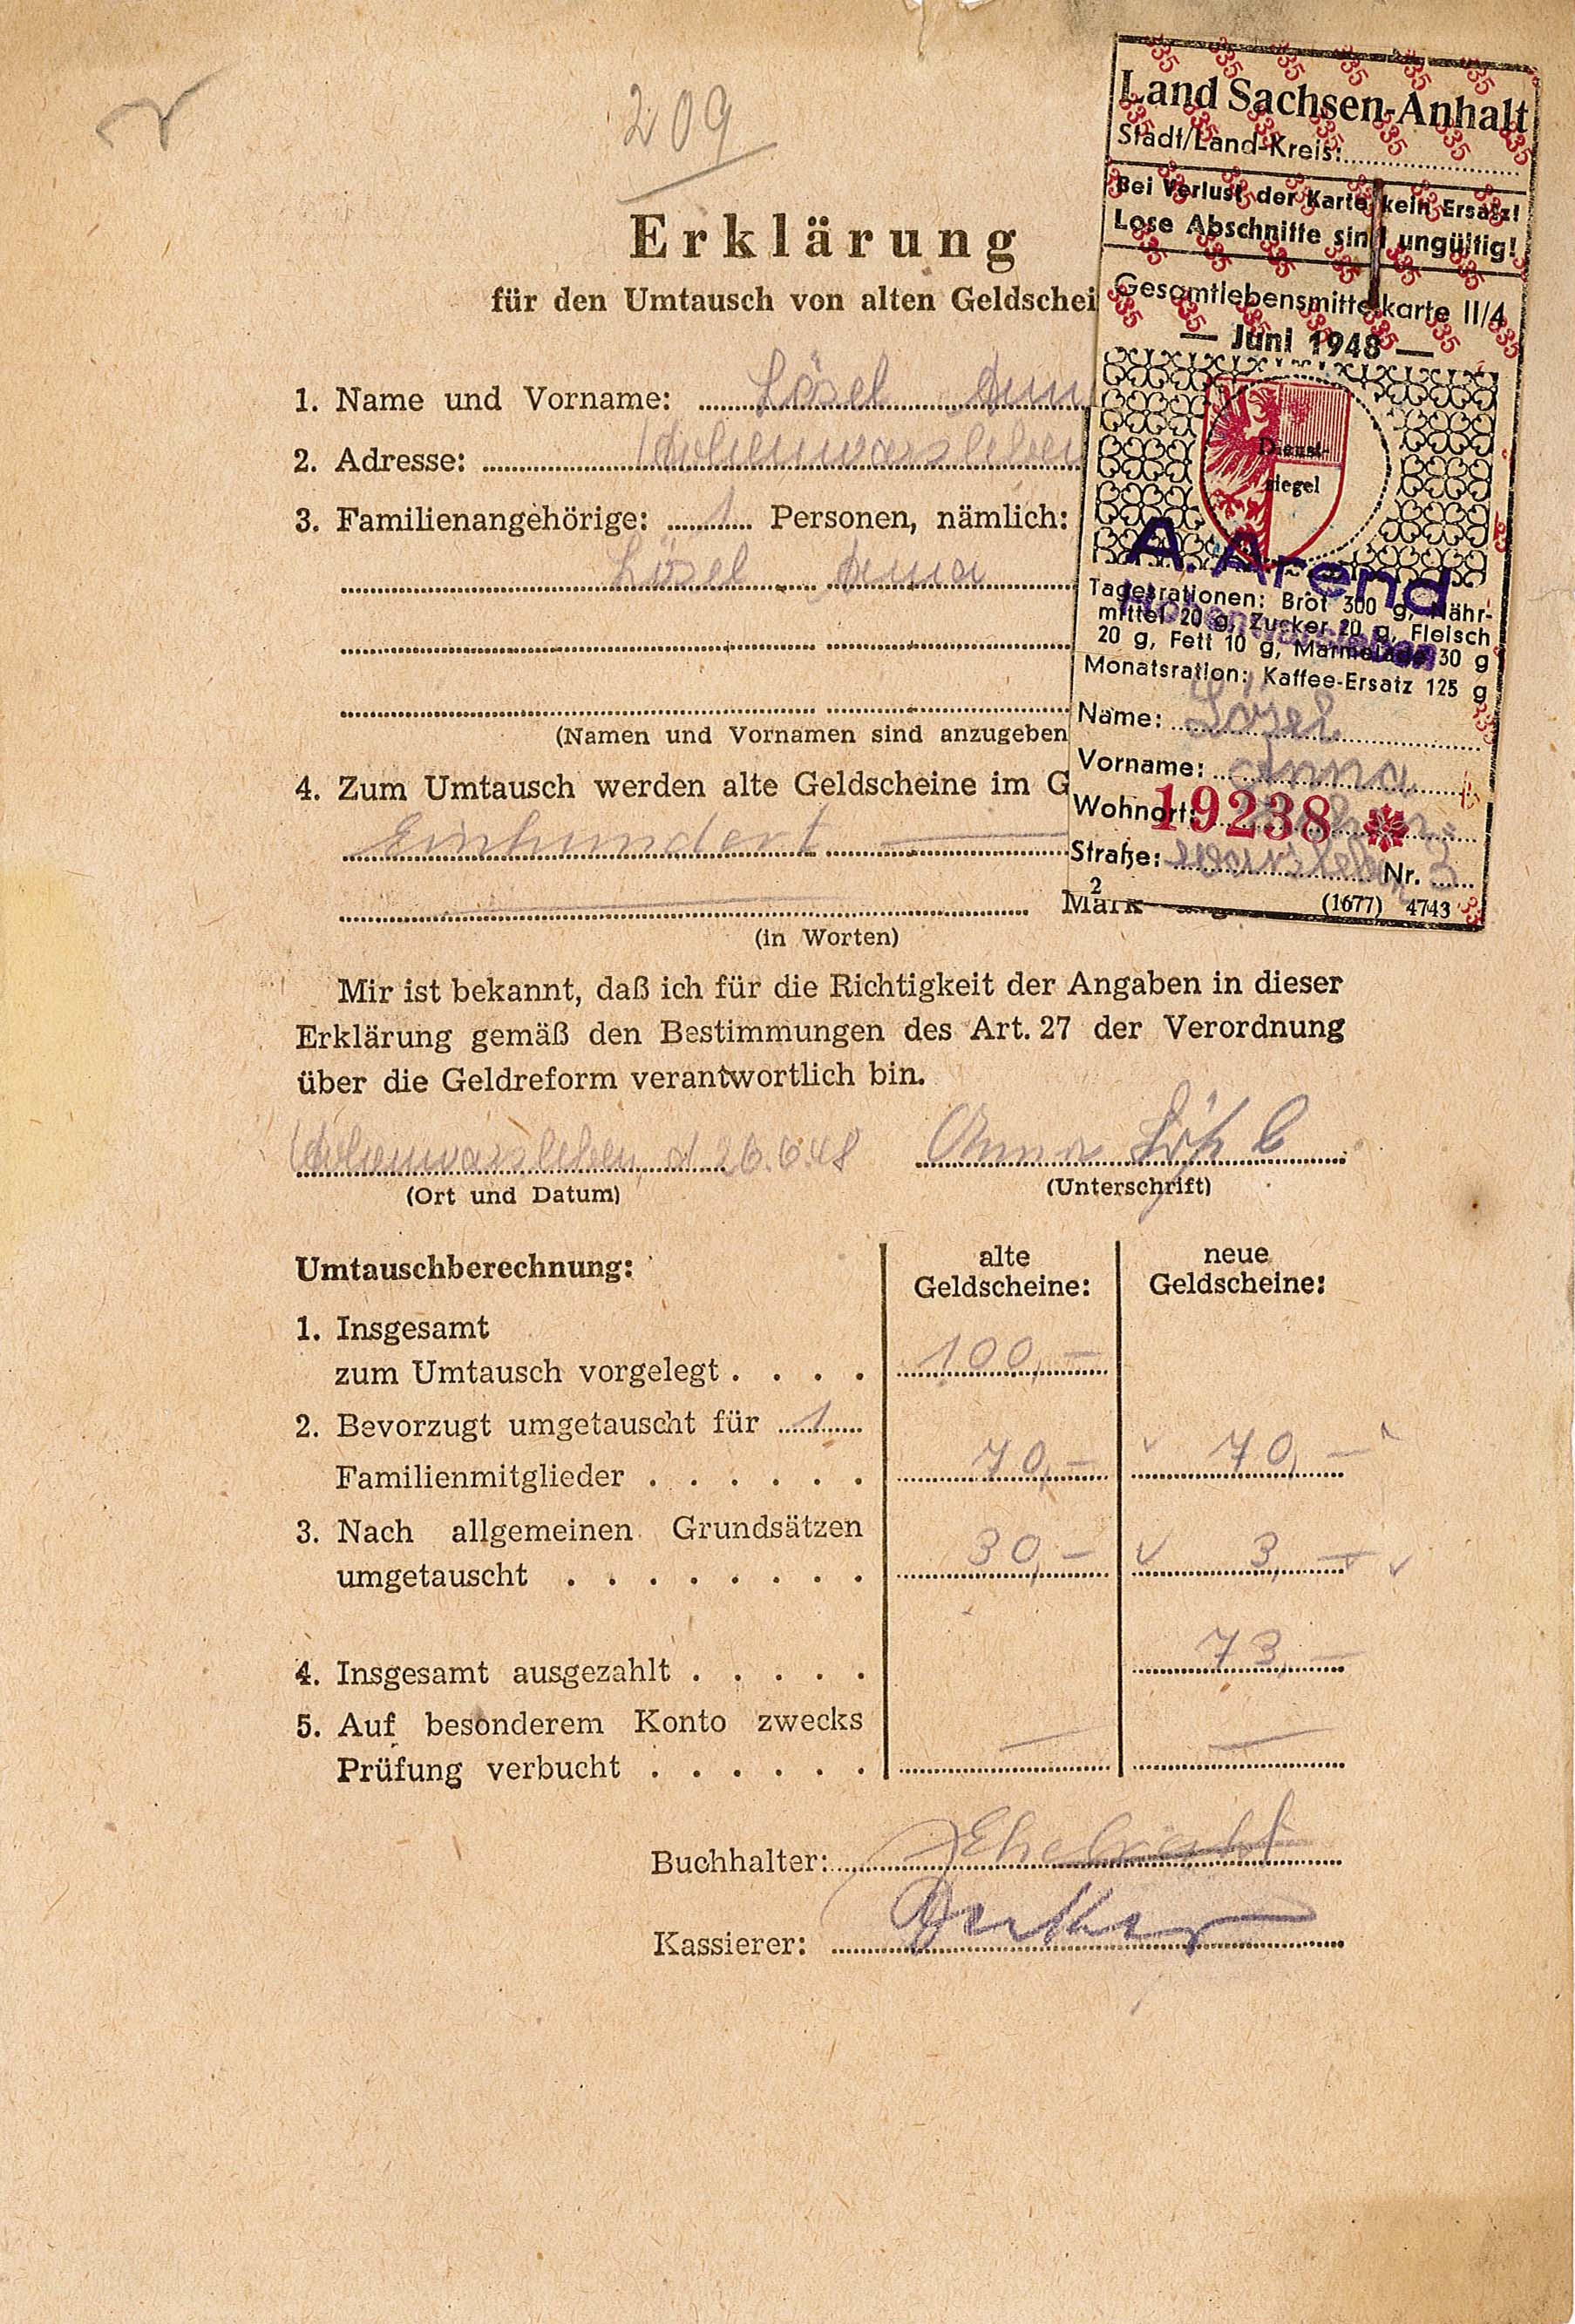 Erklärung für den Umtausch von Altgeld von Anna Lösel, 26. Juni 1948 - mit Lebensmittelmarke (Museum Wolmirstedt RR-F)